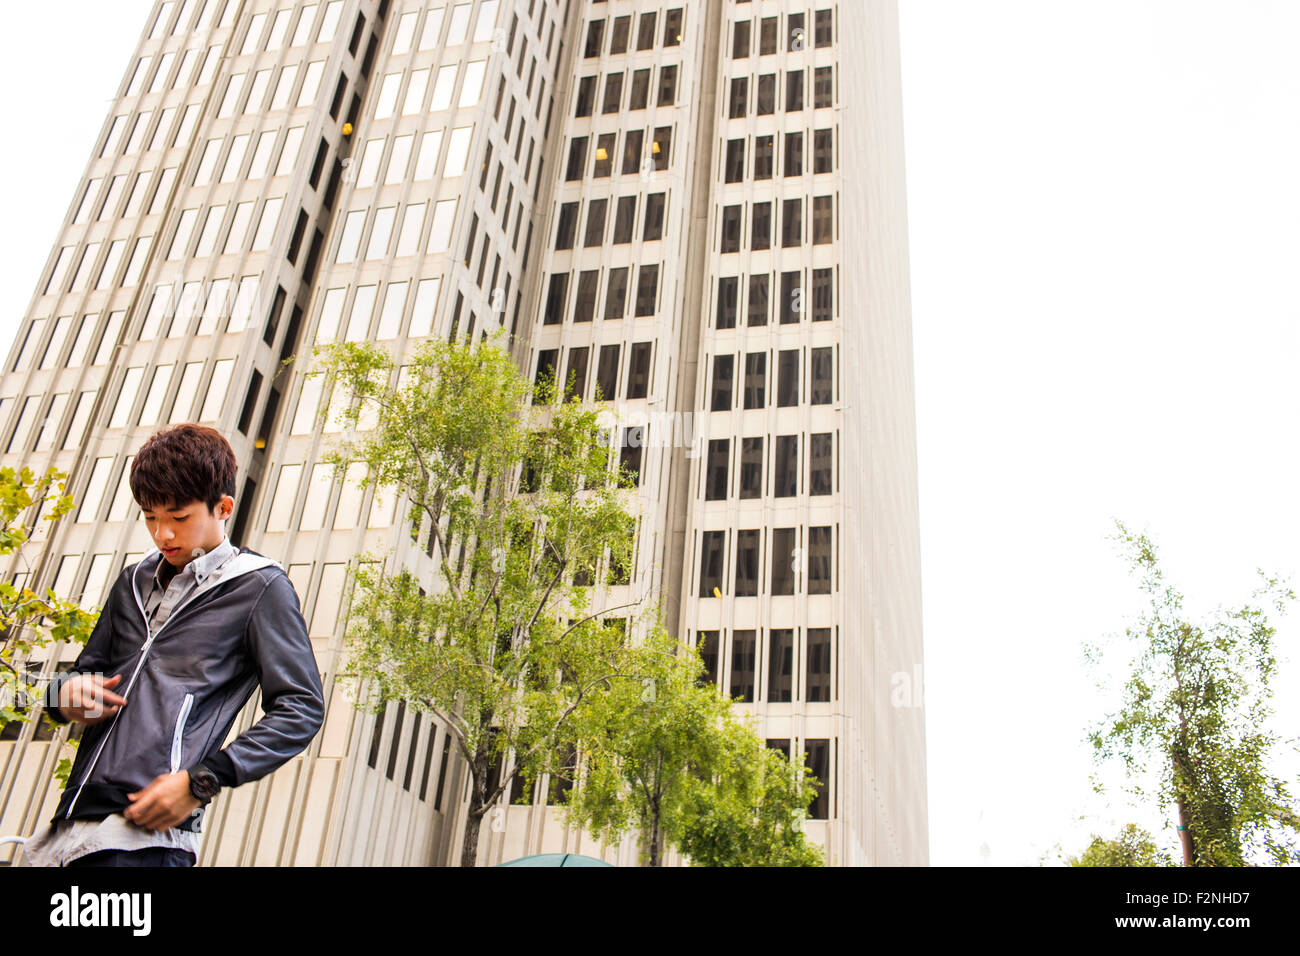 Asian man standing près de gratte-ciel urbain Banque D'Images